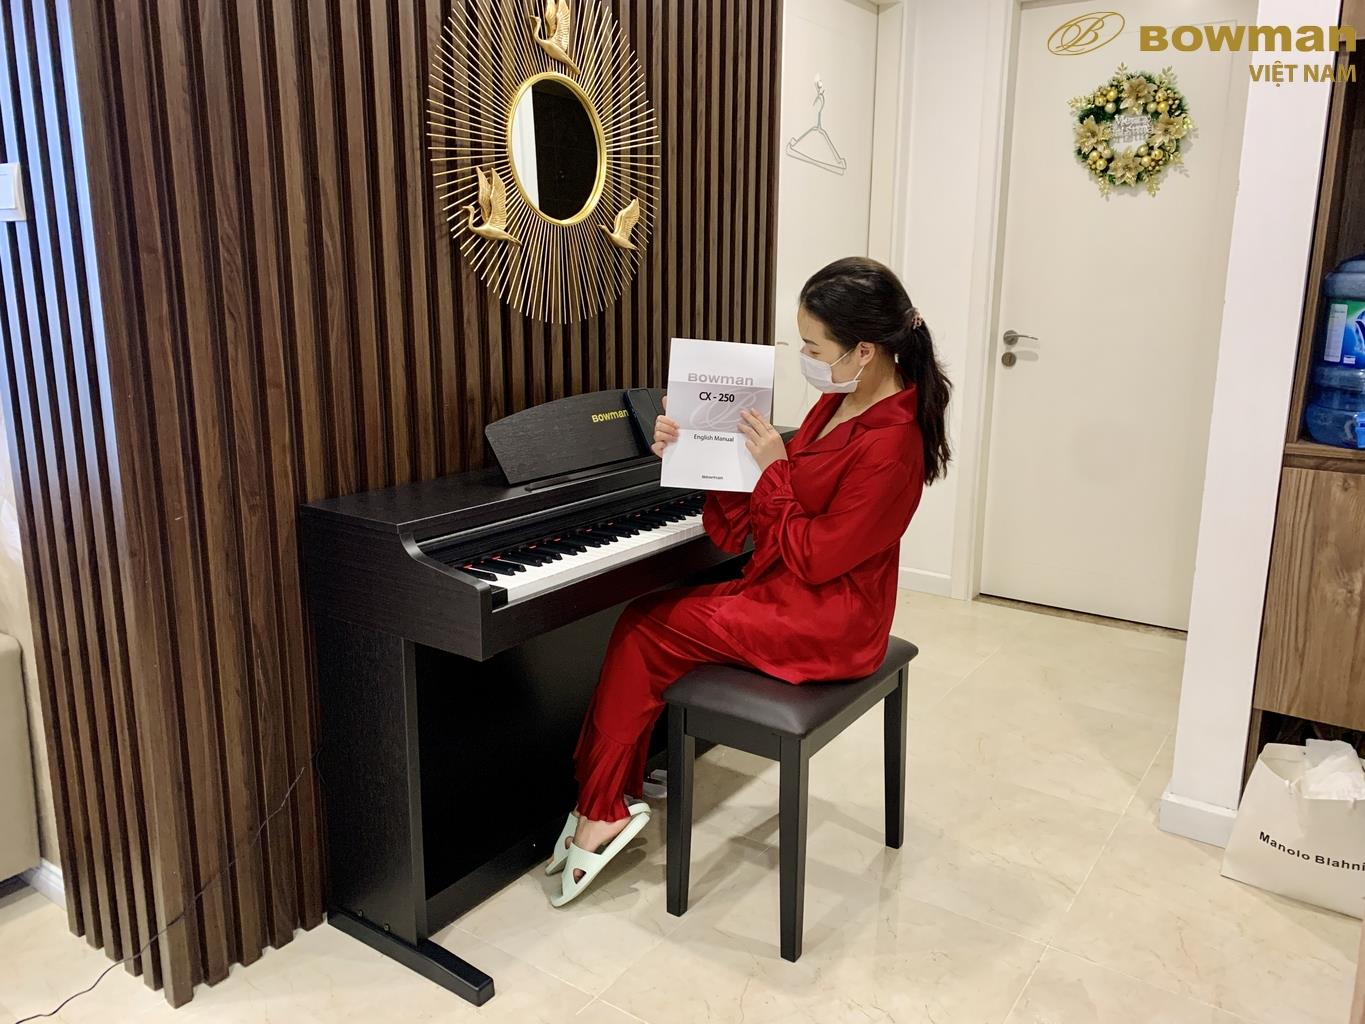 Đầu Xuân, Bowman PIANO rất vui mừng khi được nữ ca sĩ nổi tiếng mở hàng với sản phẩm BOWMAN CX250